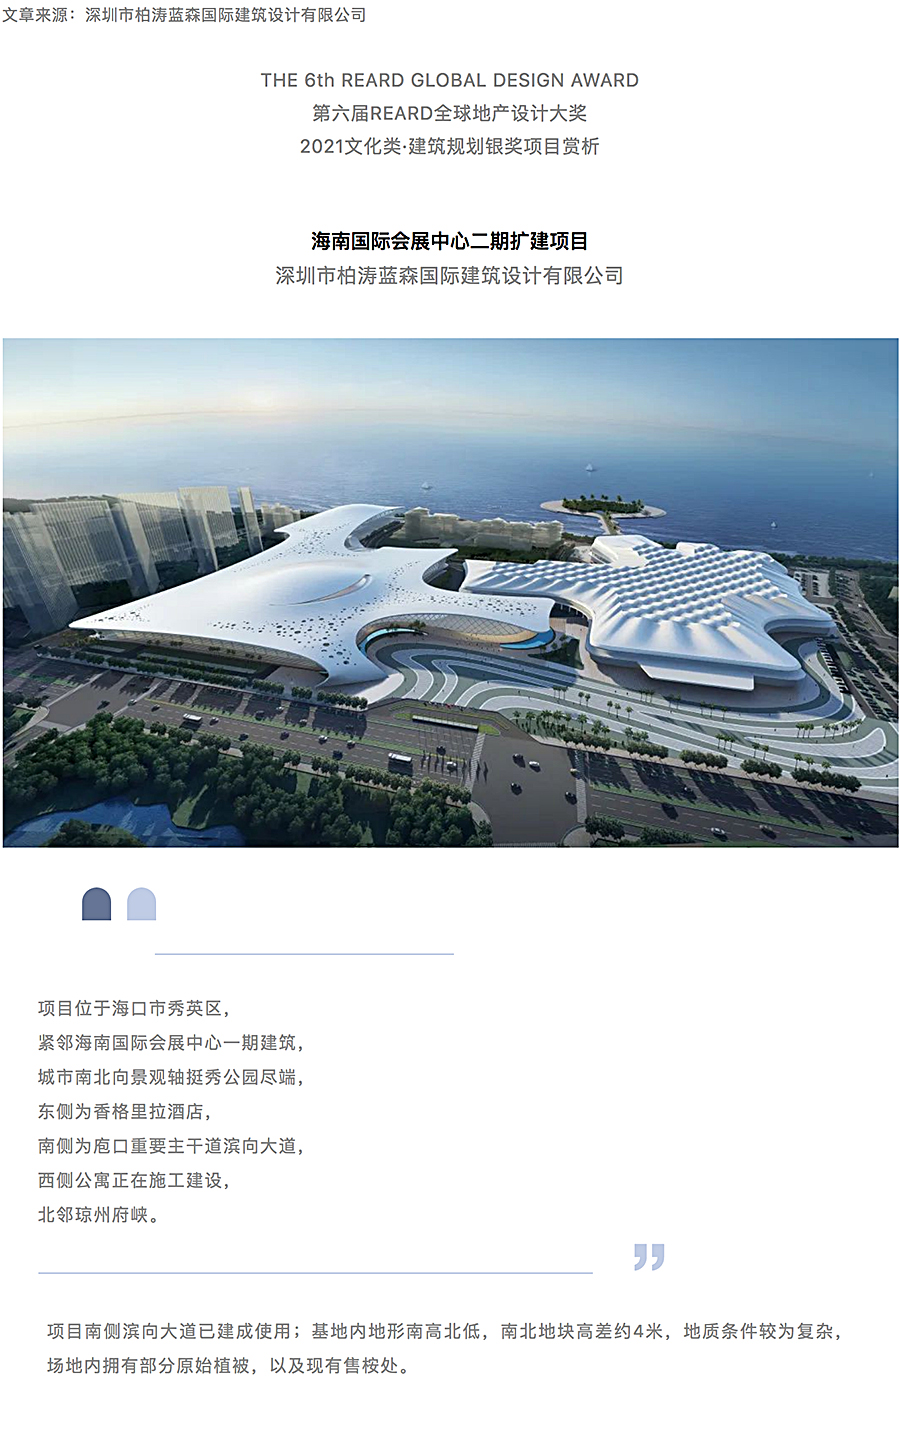 海南国际会展中心二期扩建项目_0000_图层-1.jpg